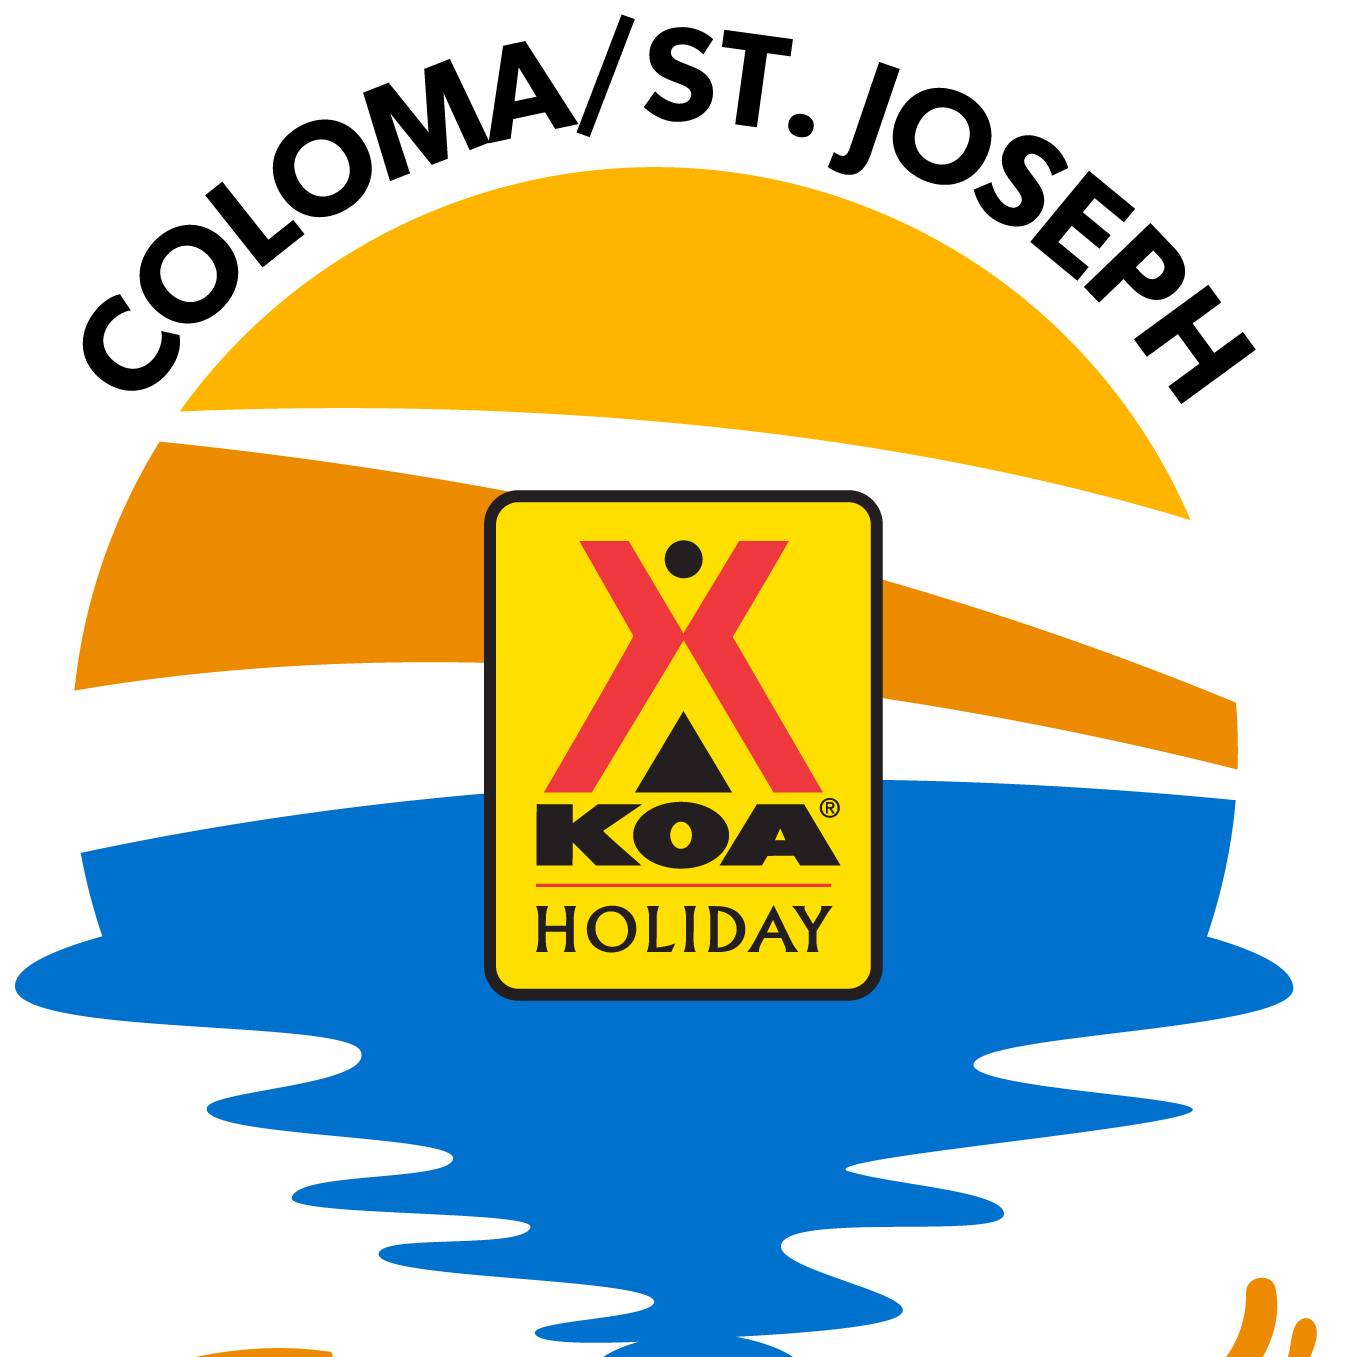 Coloma/St. Joseph KOA Holiday Logo